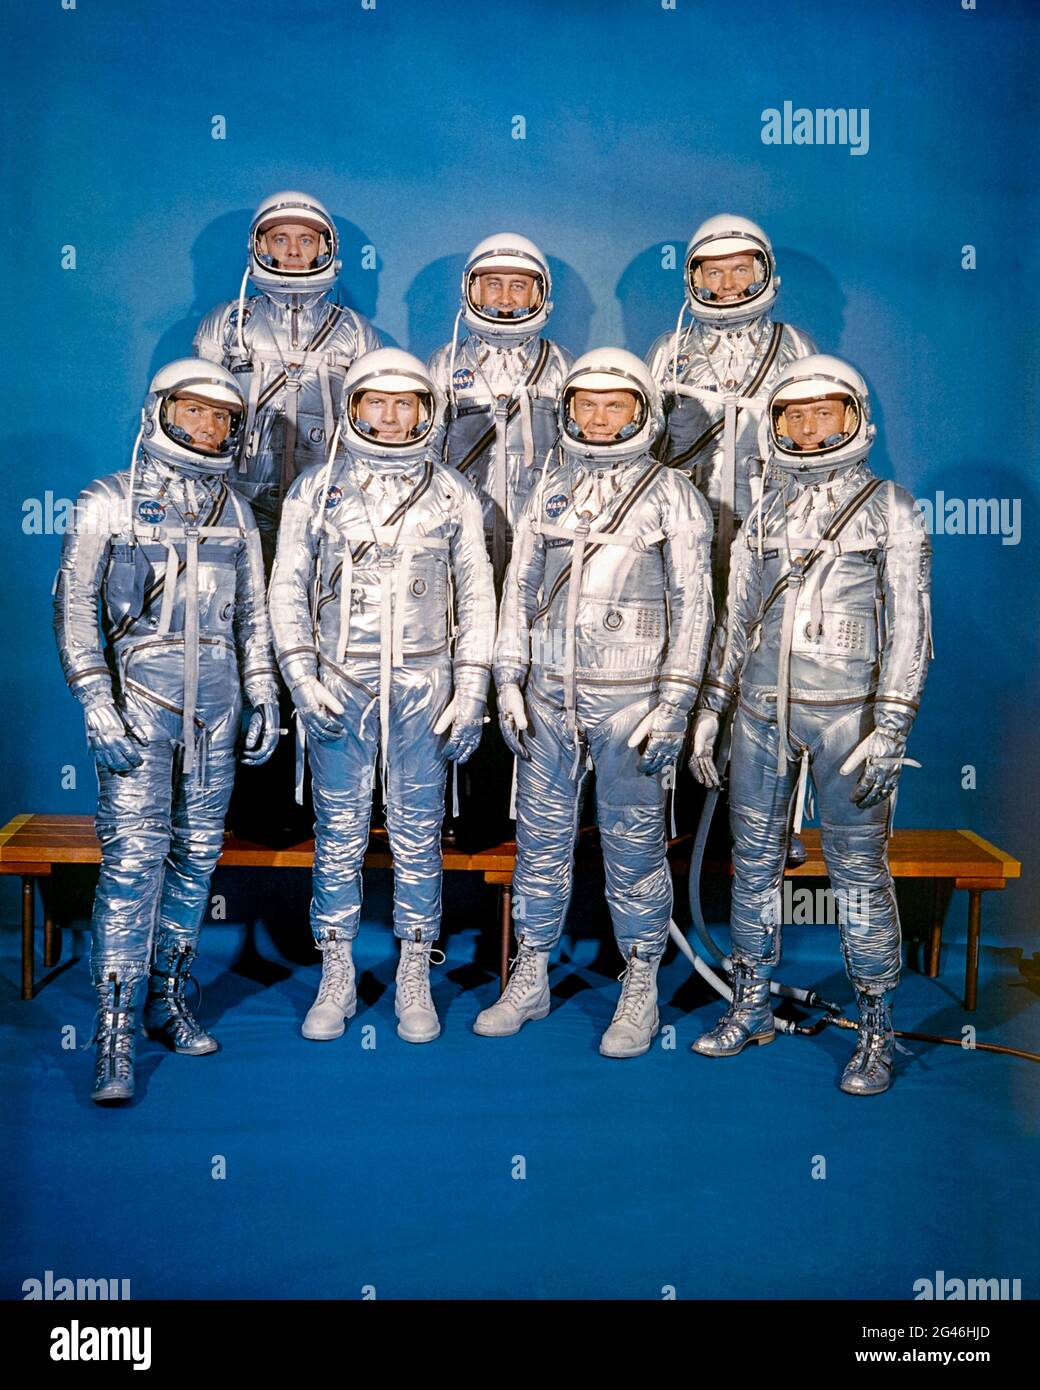 Die Mercury Seven, auch bekannt als die Original Seven, waren die amerikanischen Astronauten Scott Karpper, Gordon Cooper, John Glenn, Gus Grissom, Wally Schirra, Alan Shepard und Deke Slayton, aufgenommen am 17. März 1960. Stockfoto